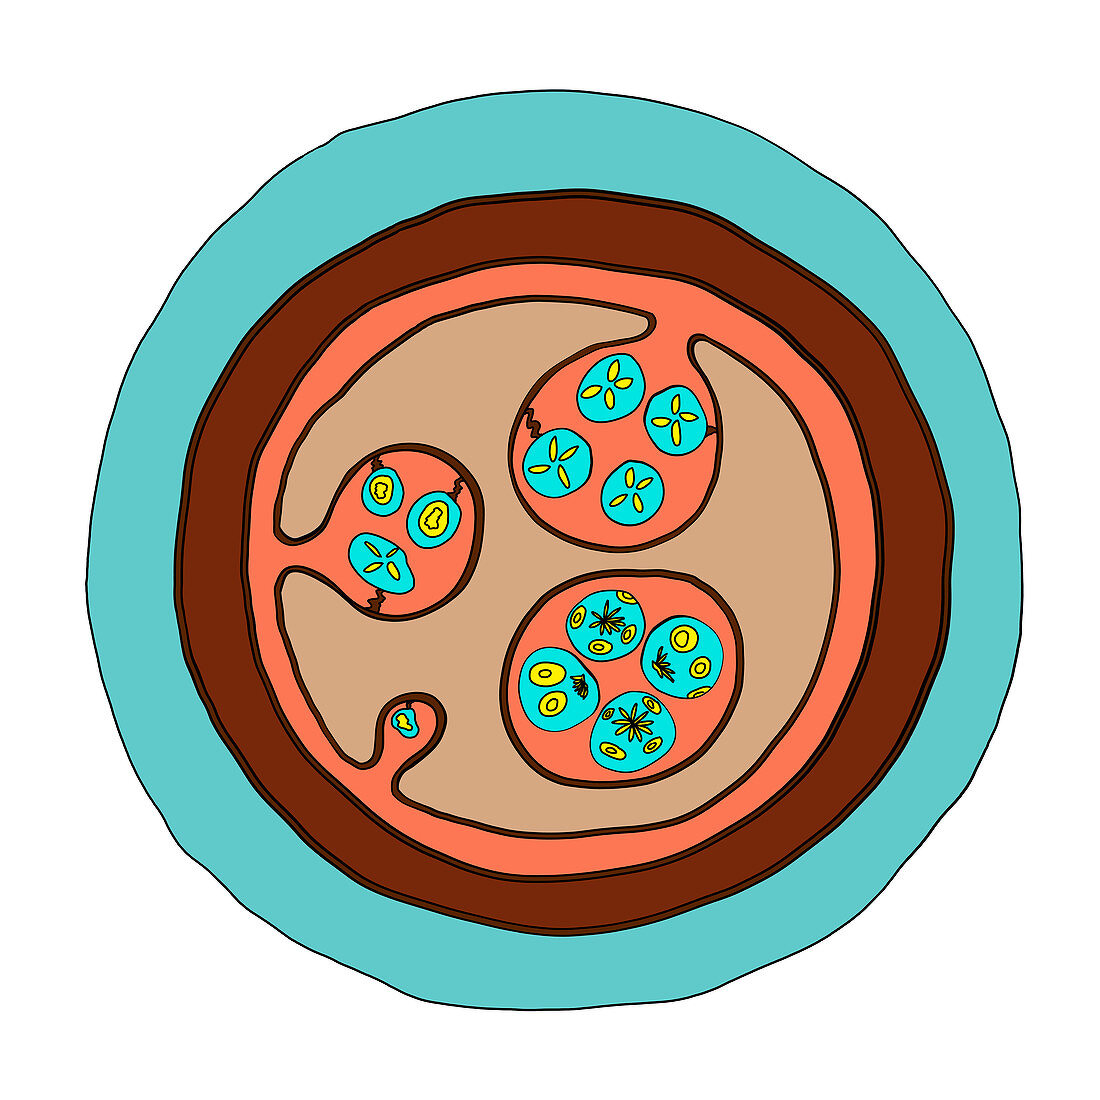 Echinococcus granulosus hydatid cyst, illustration